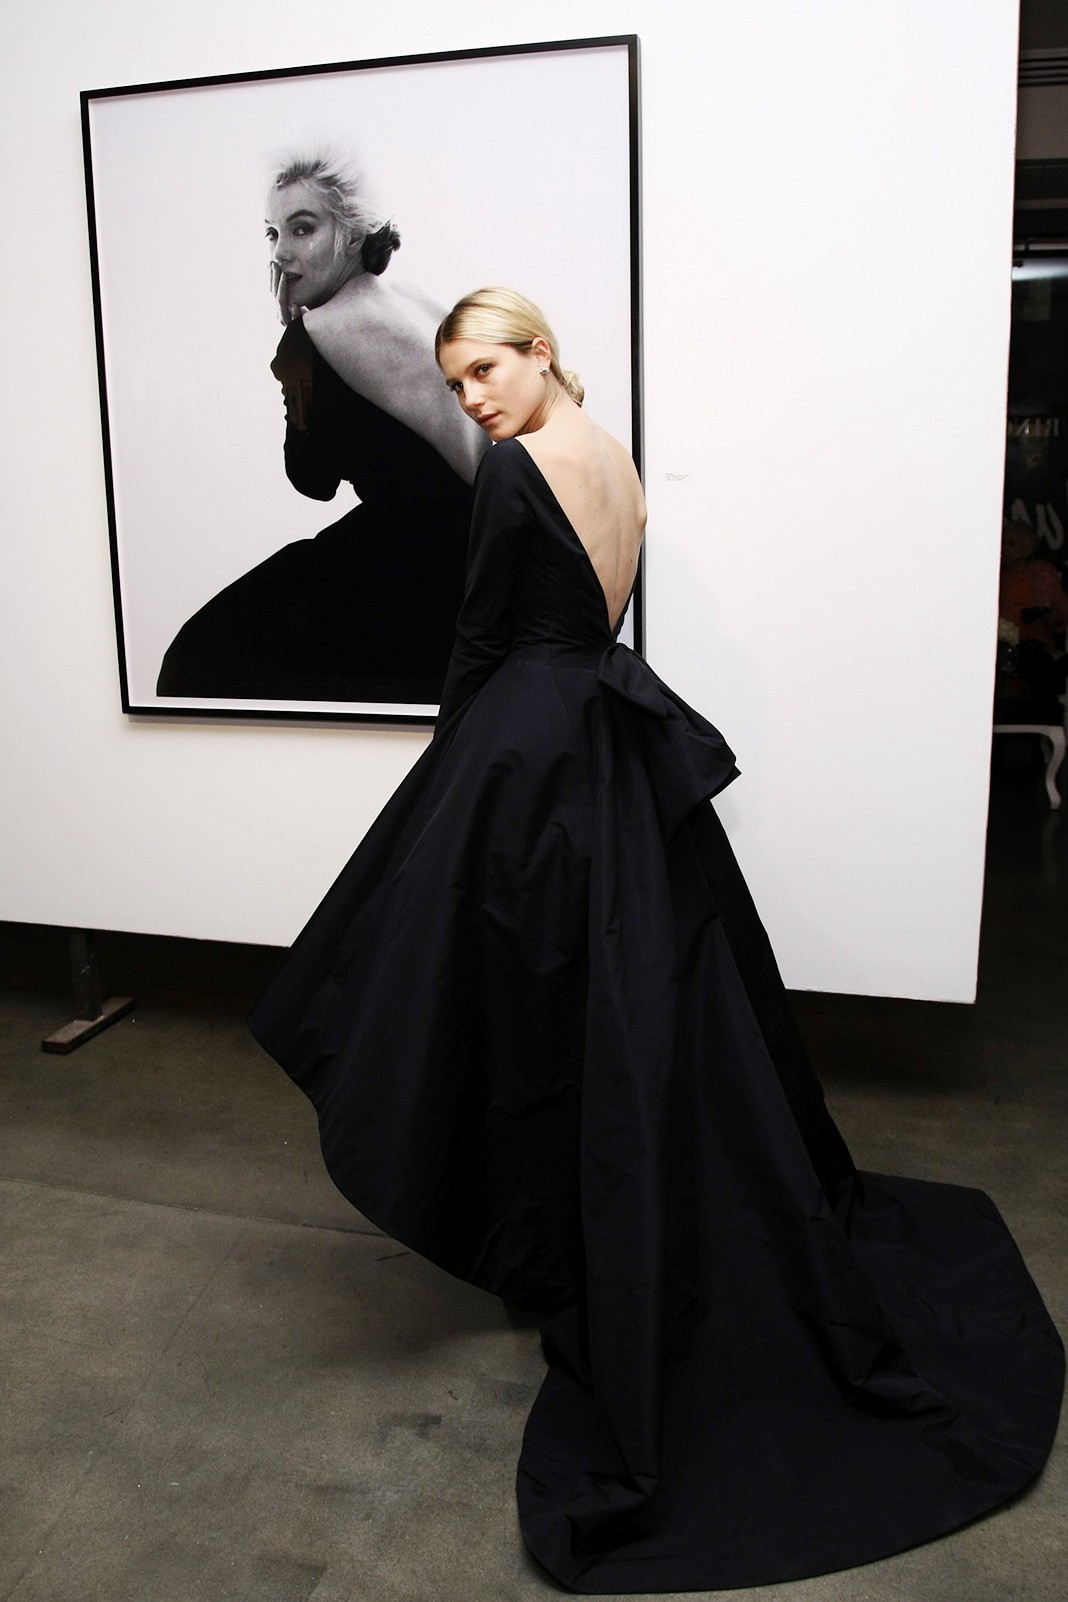 На открытии выставки Dior и The Weinstein Company «Picturing Marilyn» в Нью-Йорке, 9 ноября 2011 г.